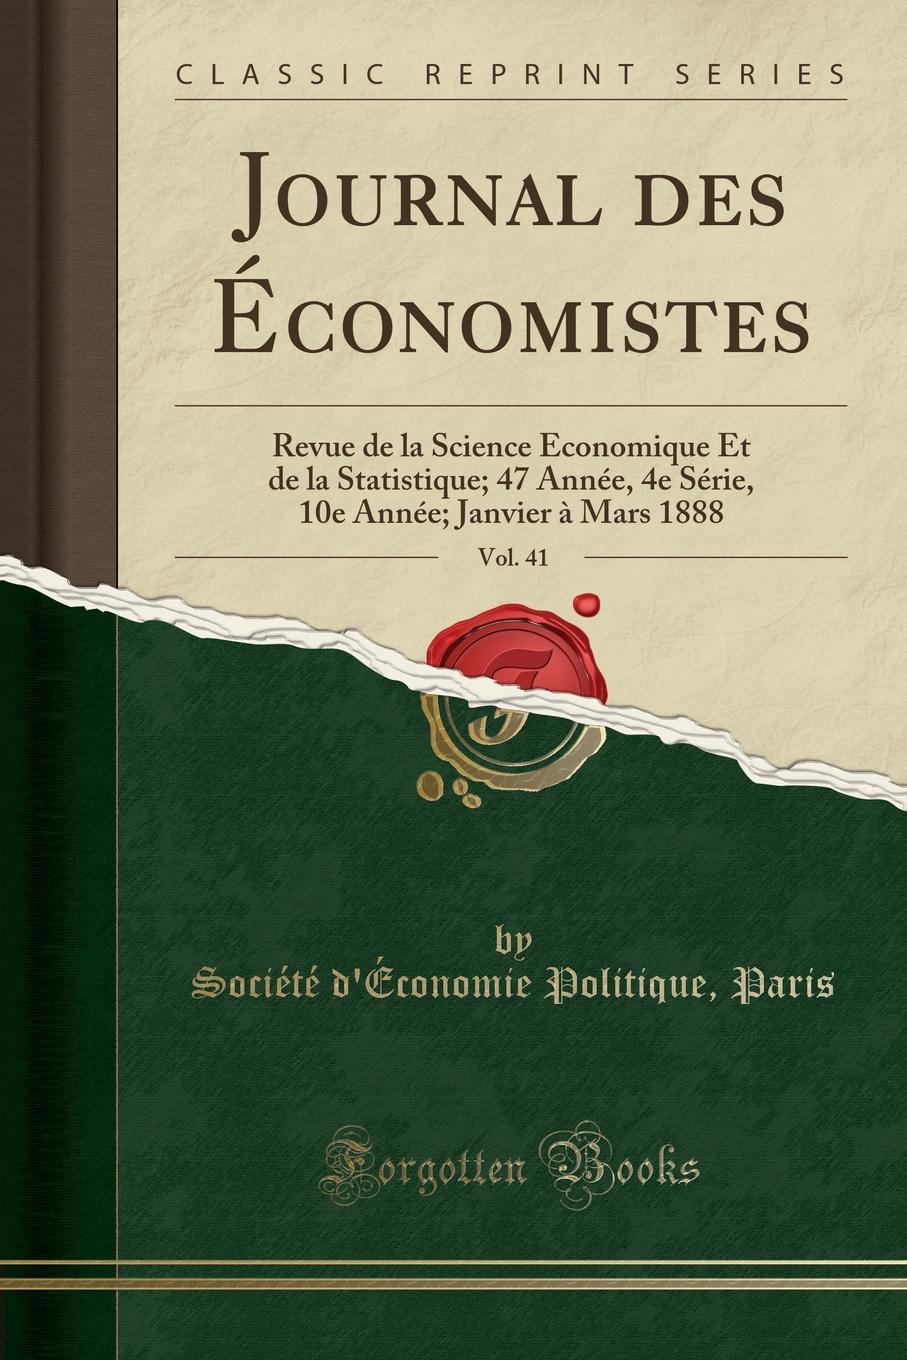 фото Journal des Economistes, Vol. 41. Revue de la Science Economique Et de la Statistique; 47 Annee, 4e Serie, 10e Annee; Janvier a Mars 1888 (Classic Reprint)